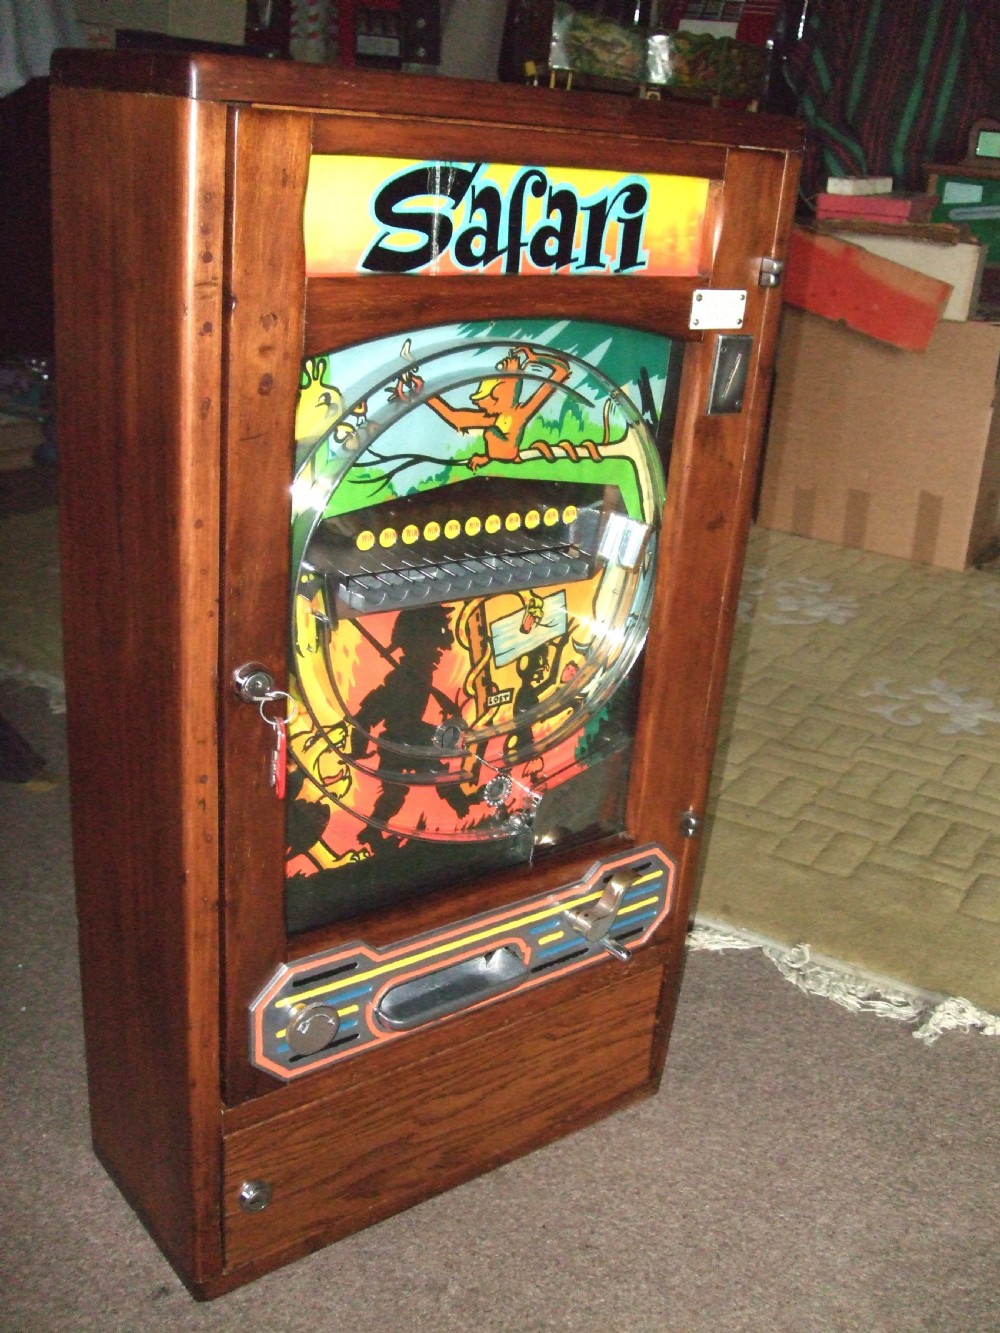 safari antique fairground amusement machine c1940 now sold